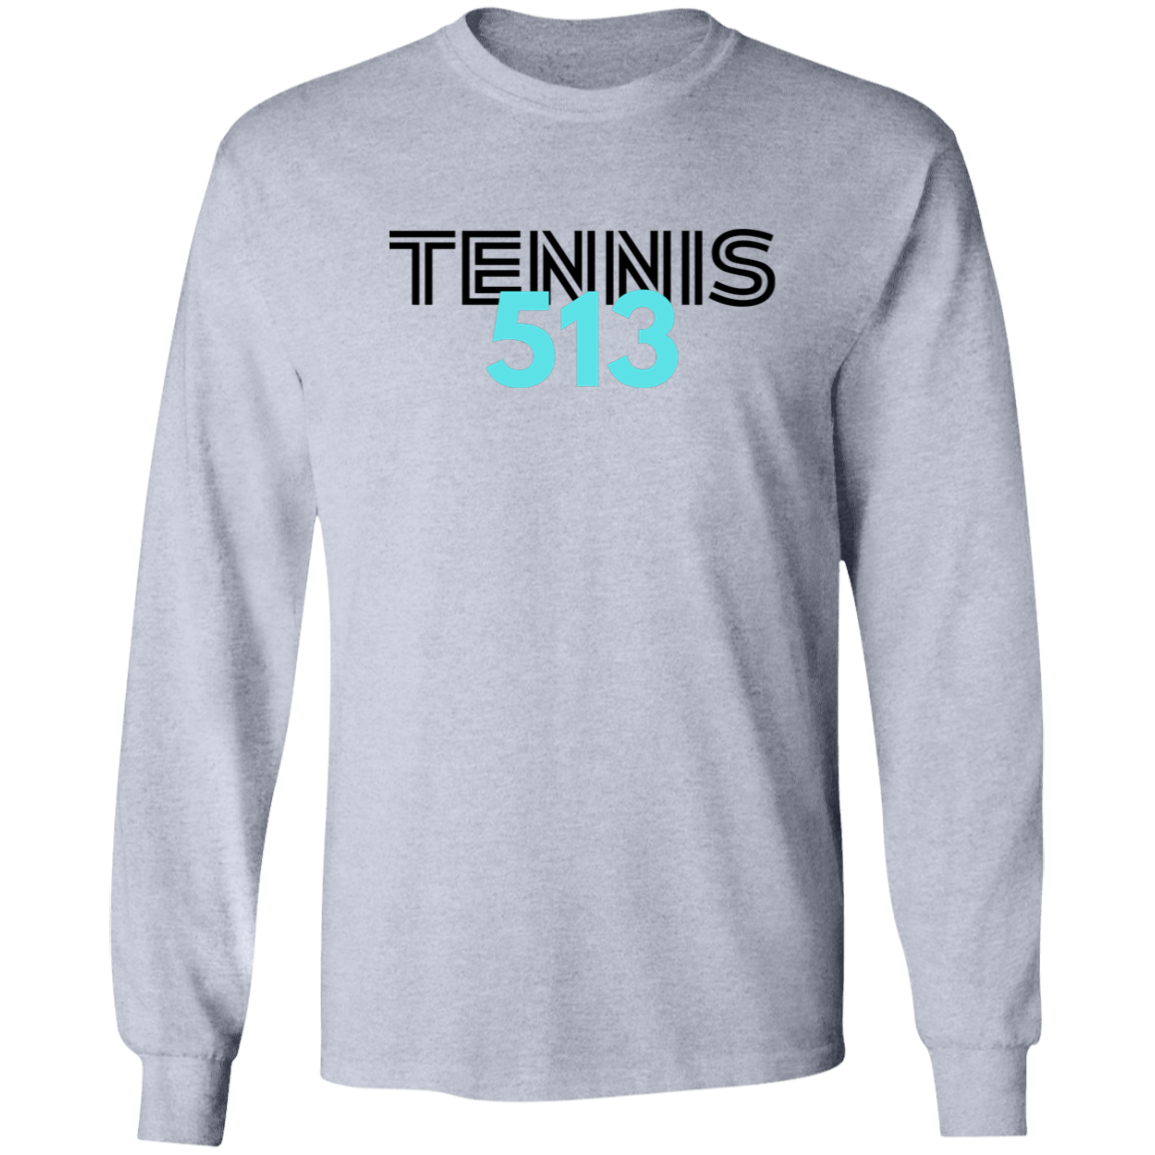 Tennis513  Ultra Cotton Unisex Tee